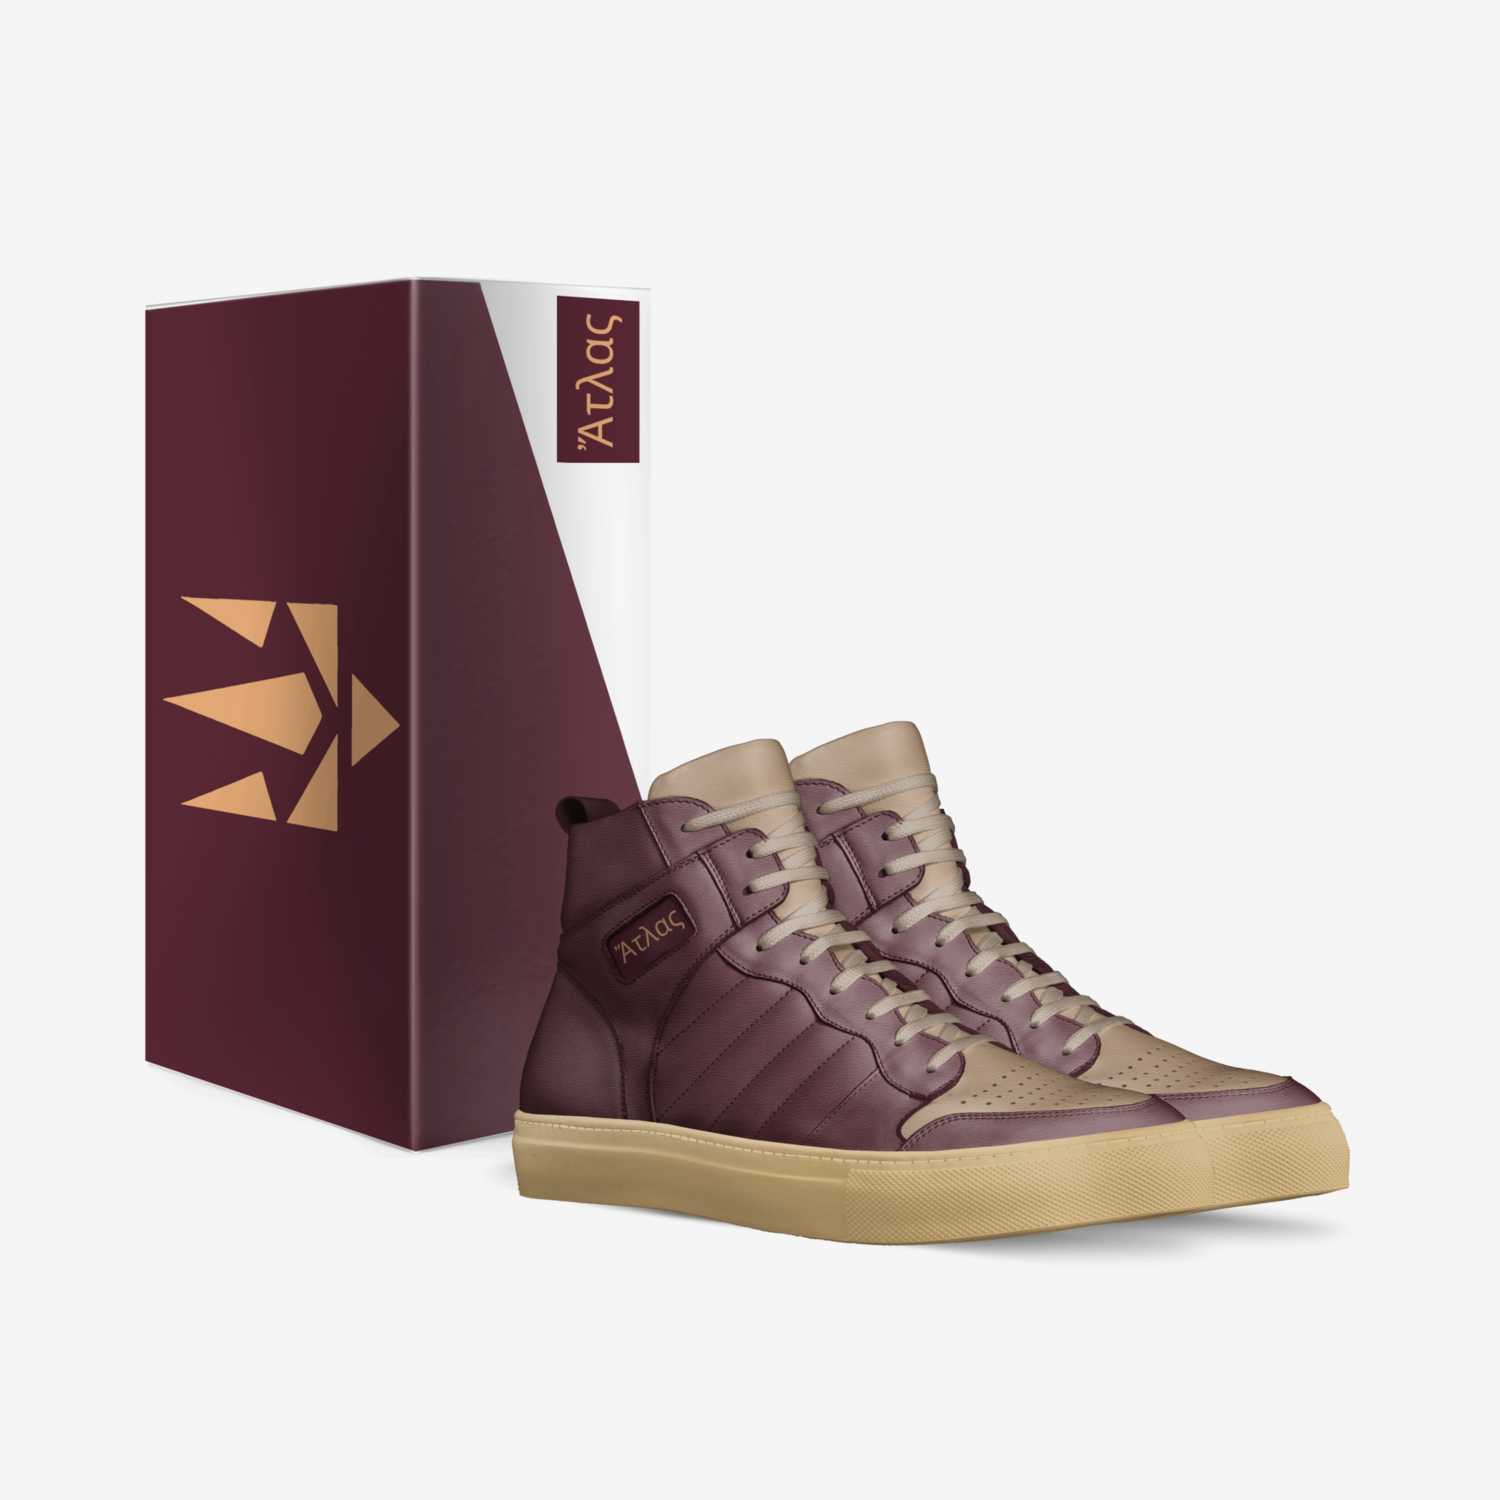 A T L A S custom made in Italy shoes by Ryan G. Rgp Enterprises, Llc | Box view